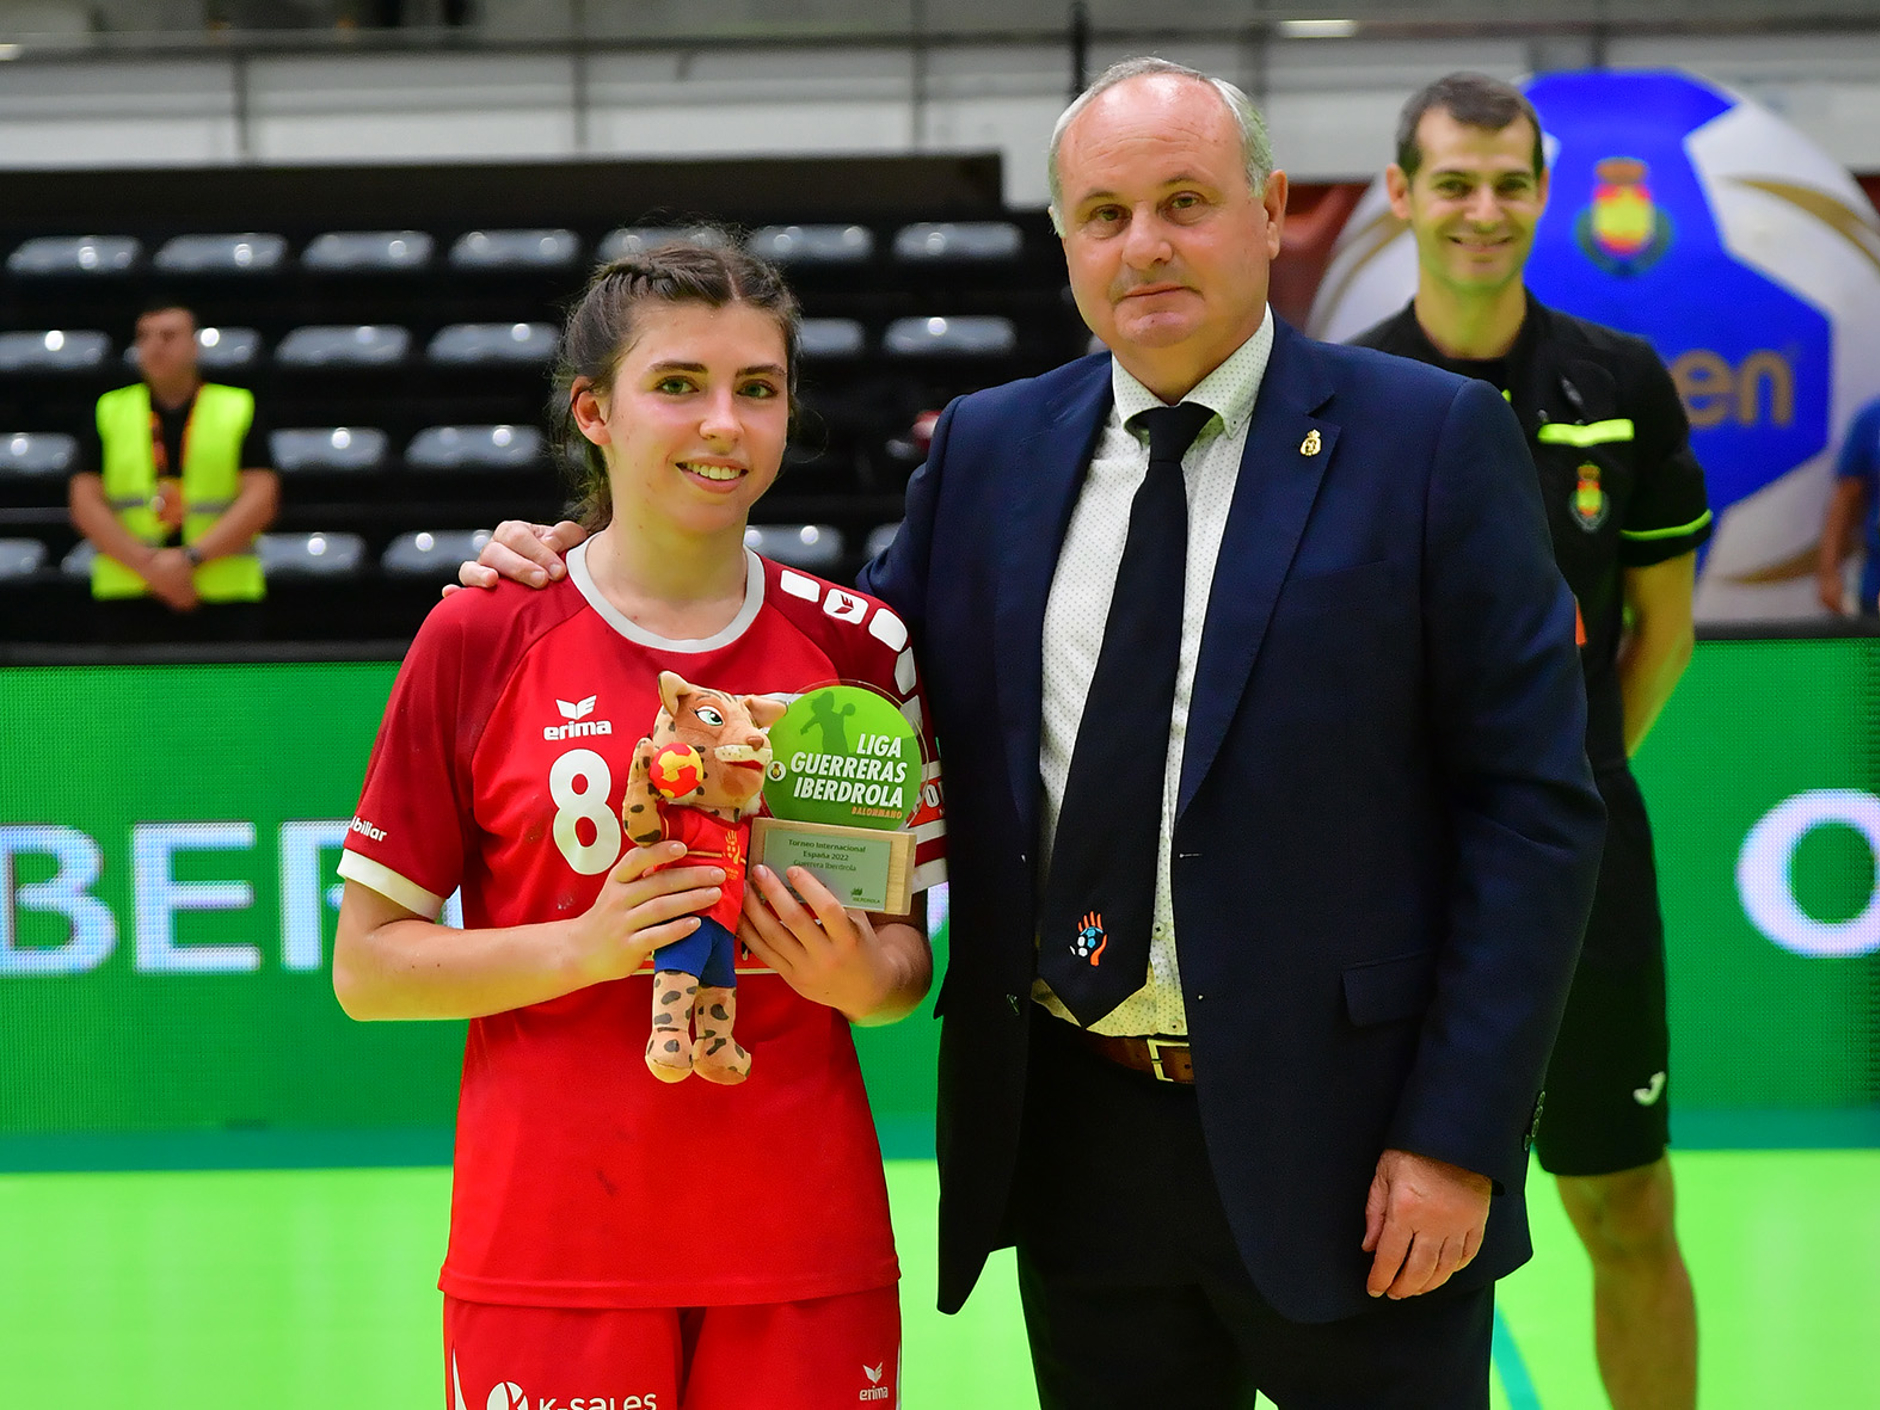 Mia Emmenegger wurde nach dem Tunesien-Spiel zum "Best Player" gewählt